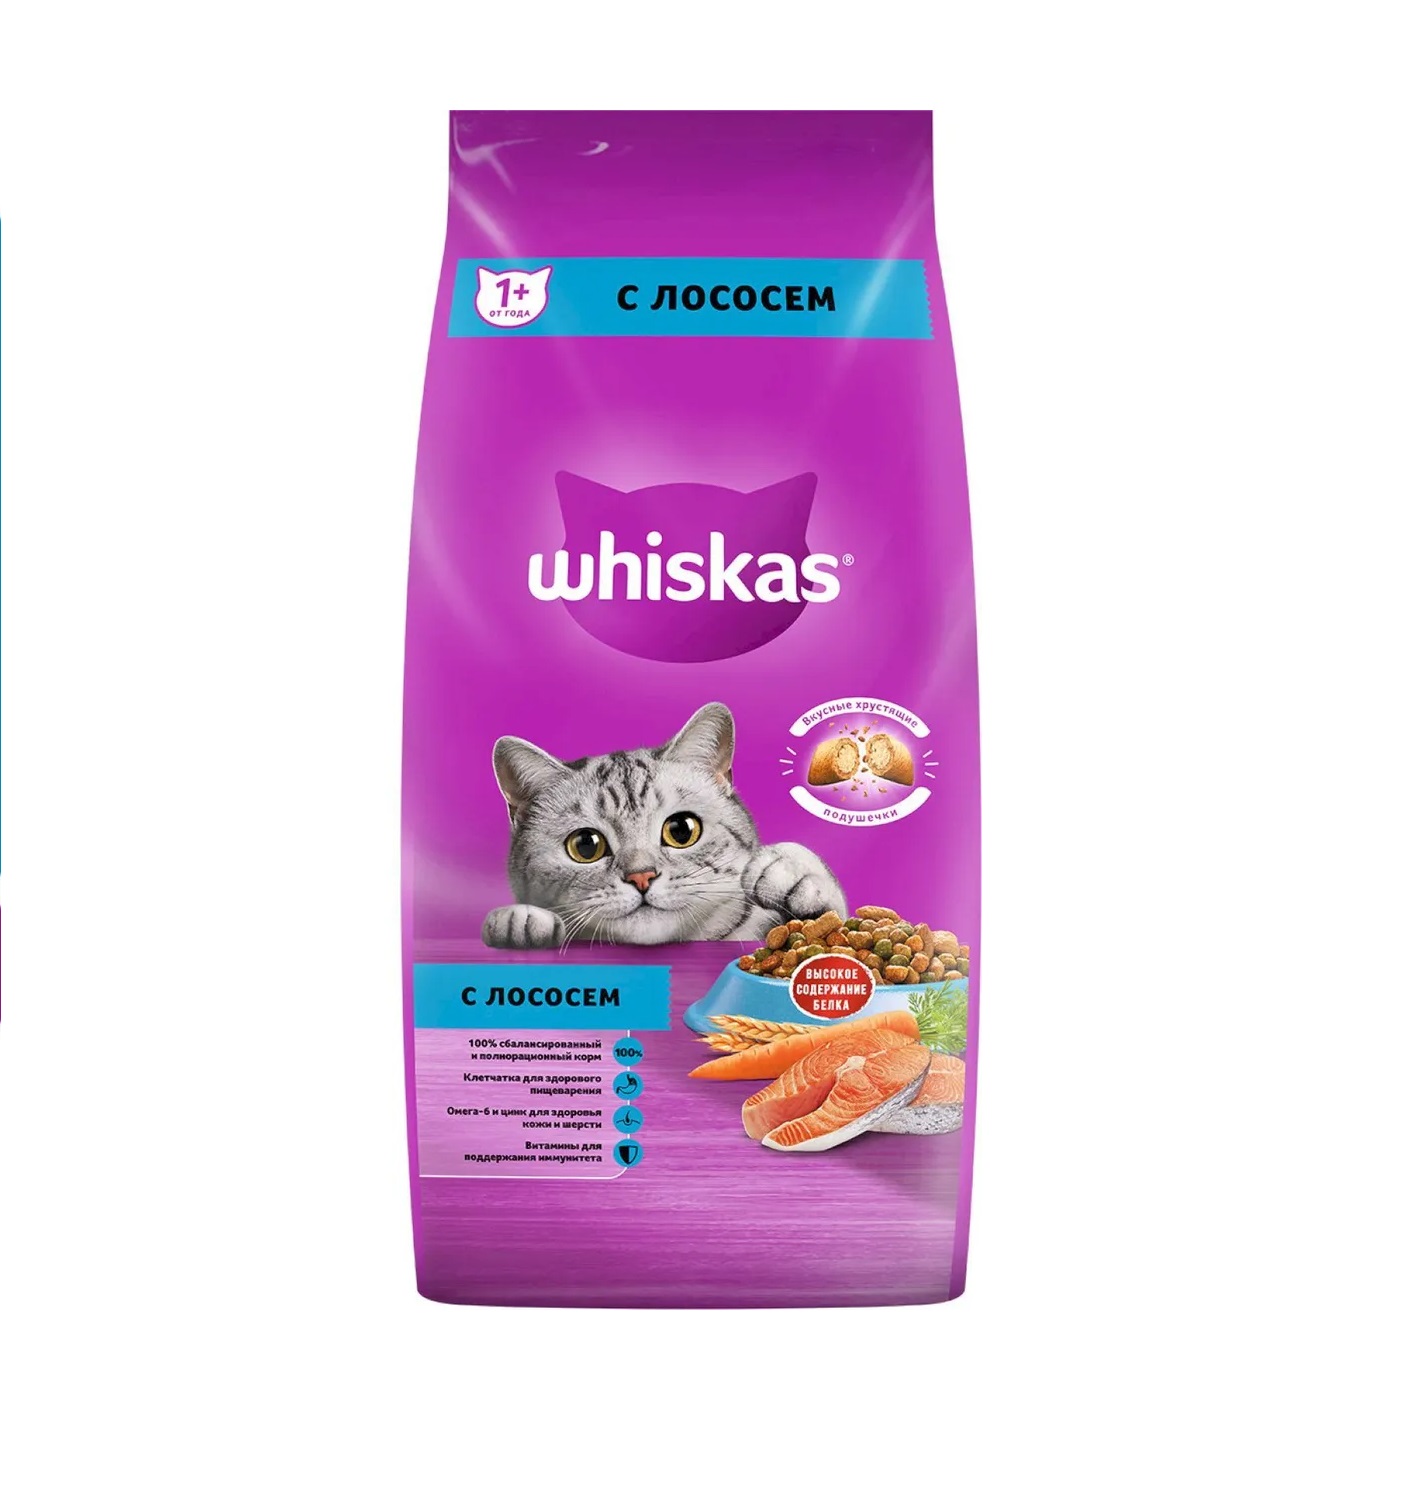 Вискас 5кг - Лосось для Взрослых Кошек (Whiskas)